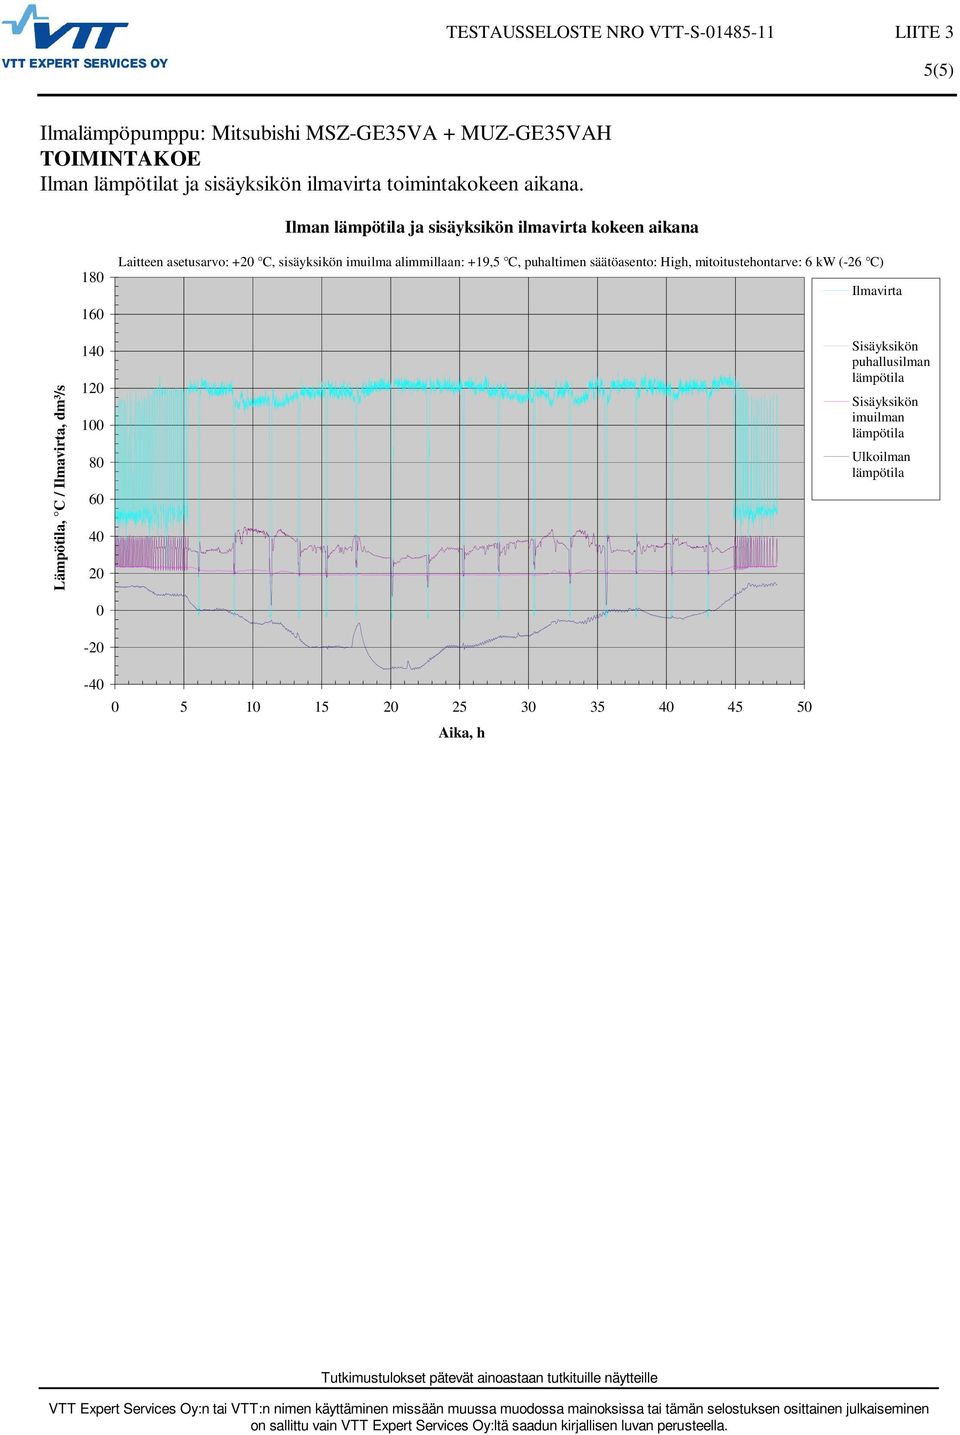 Ilman ja sisäyksikön ilmavirta kokeen aikana Lämpötila, C / Ilmavirta, dm³/s 18 16 14 12 1 8 6 4 2-2 -4